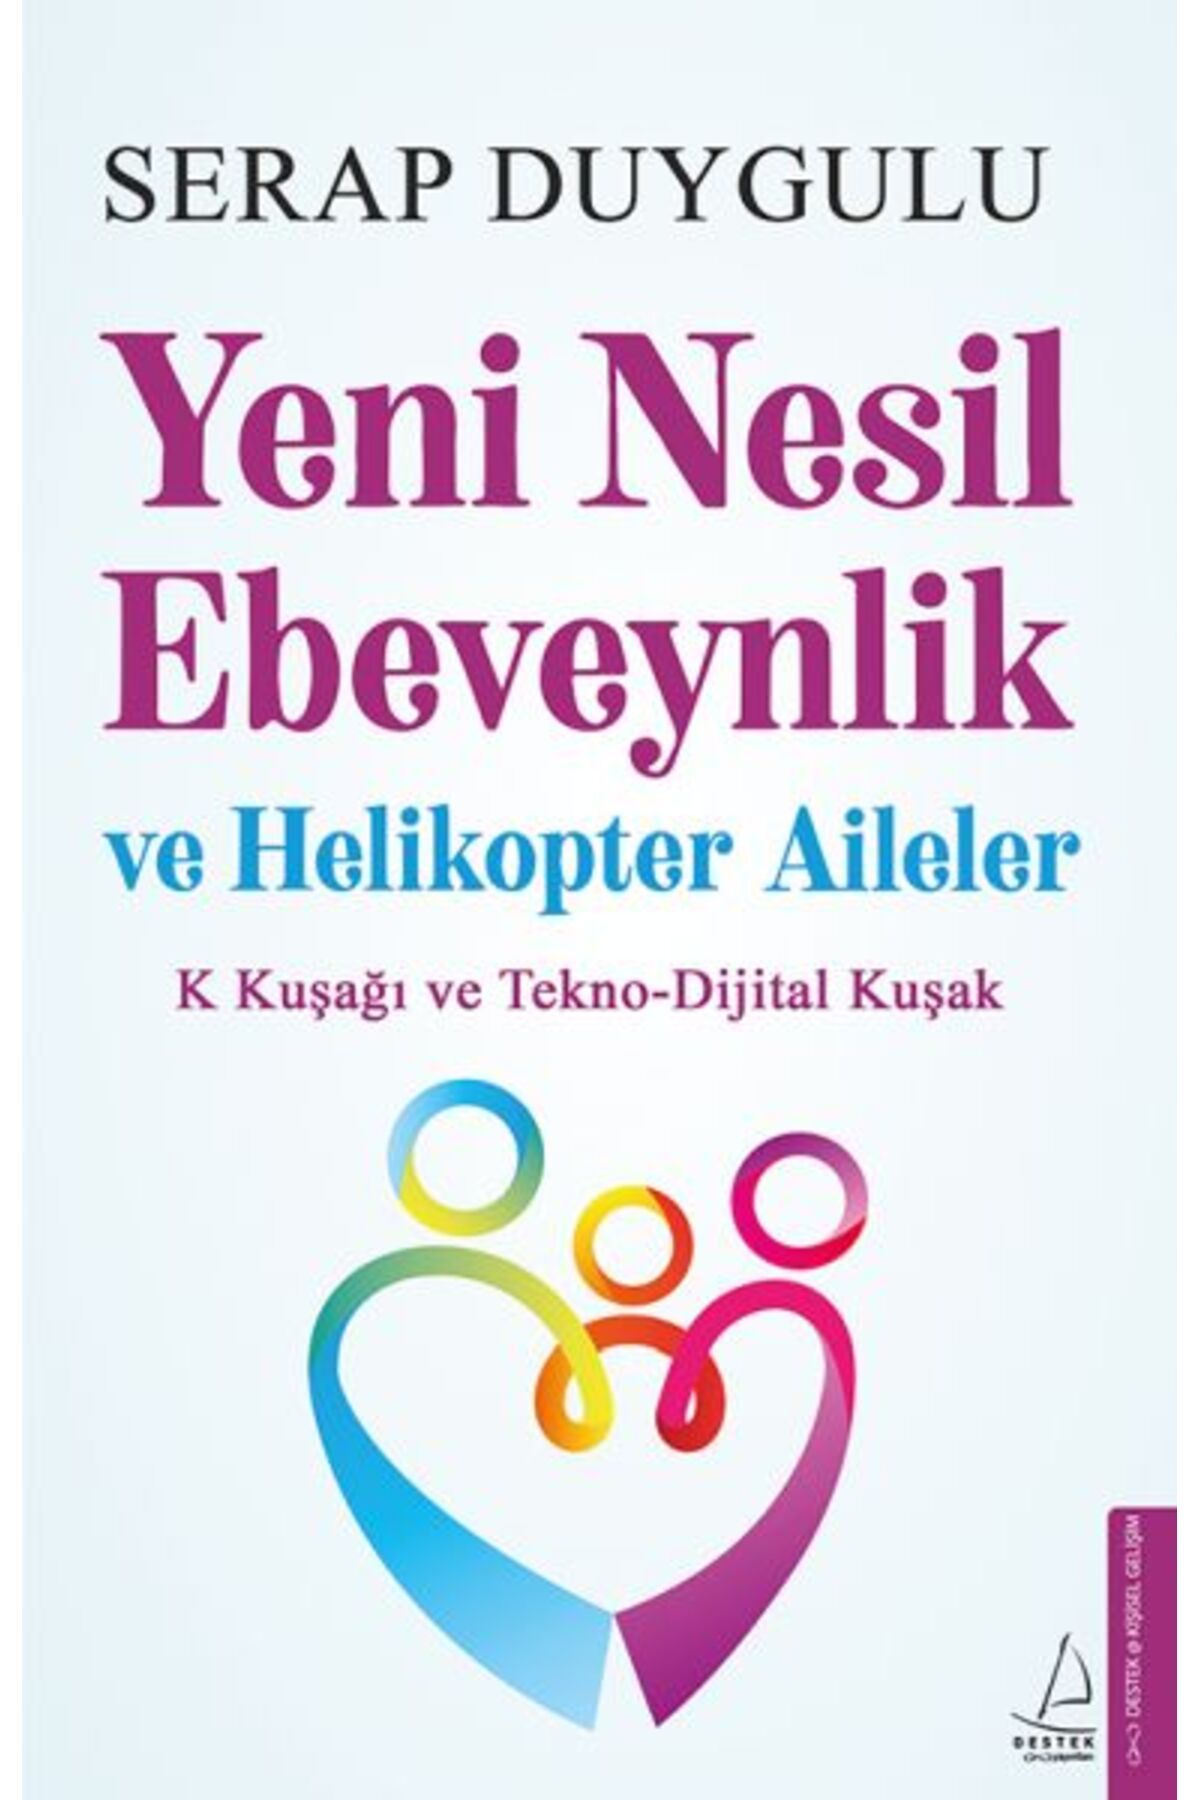 Destek Yayınları Yeni Nesil Ebeveynlik ve Helikopter Aileler